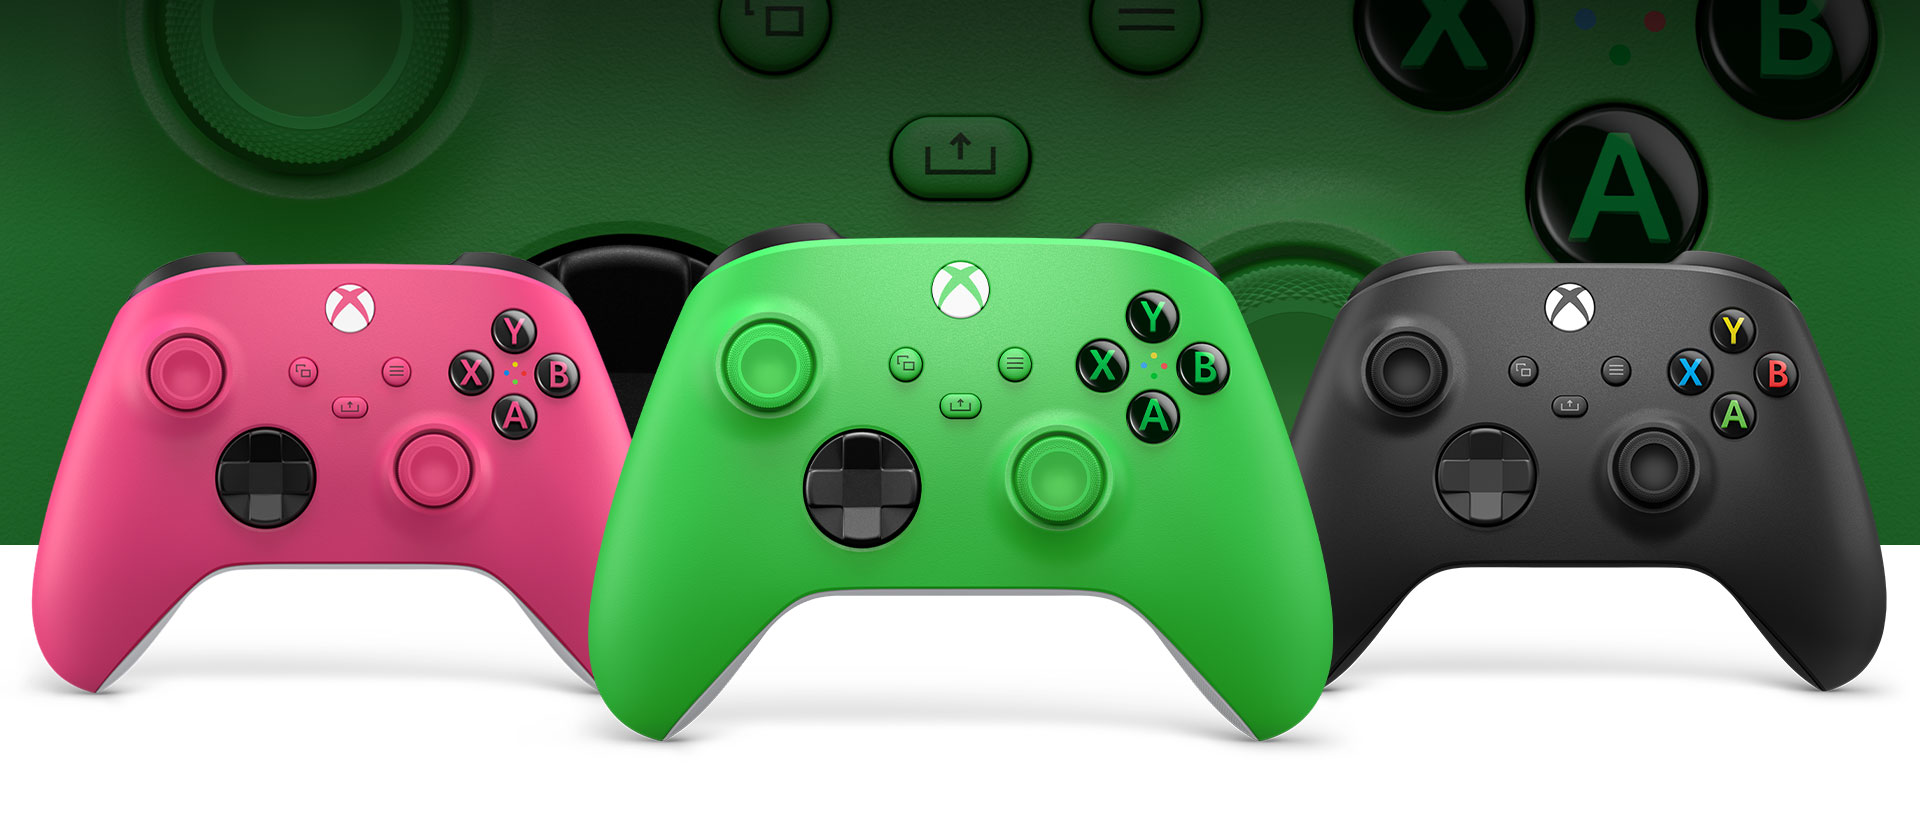 Xbox Green Controller im Vordergrund, Pink links daneben und Carbon Black rechts daneben